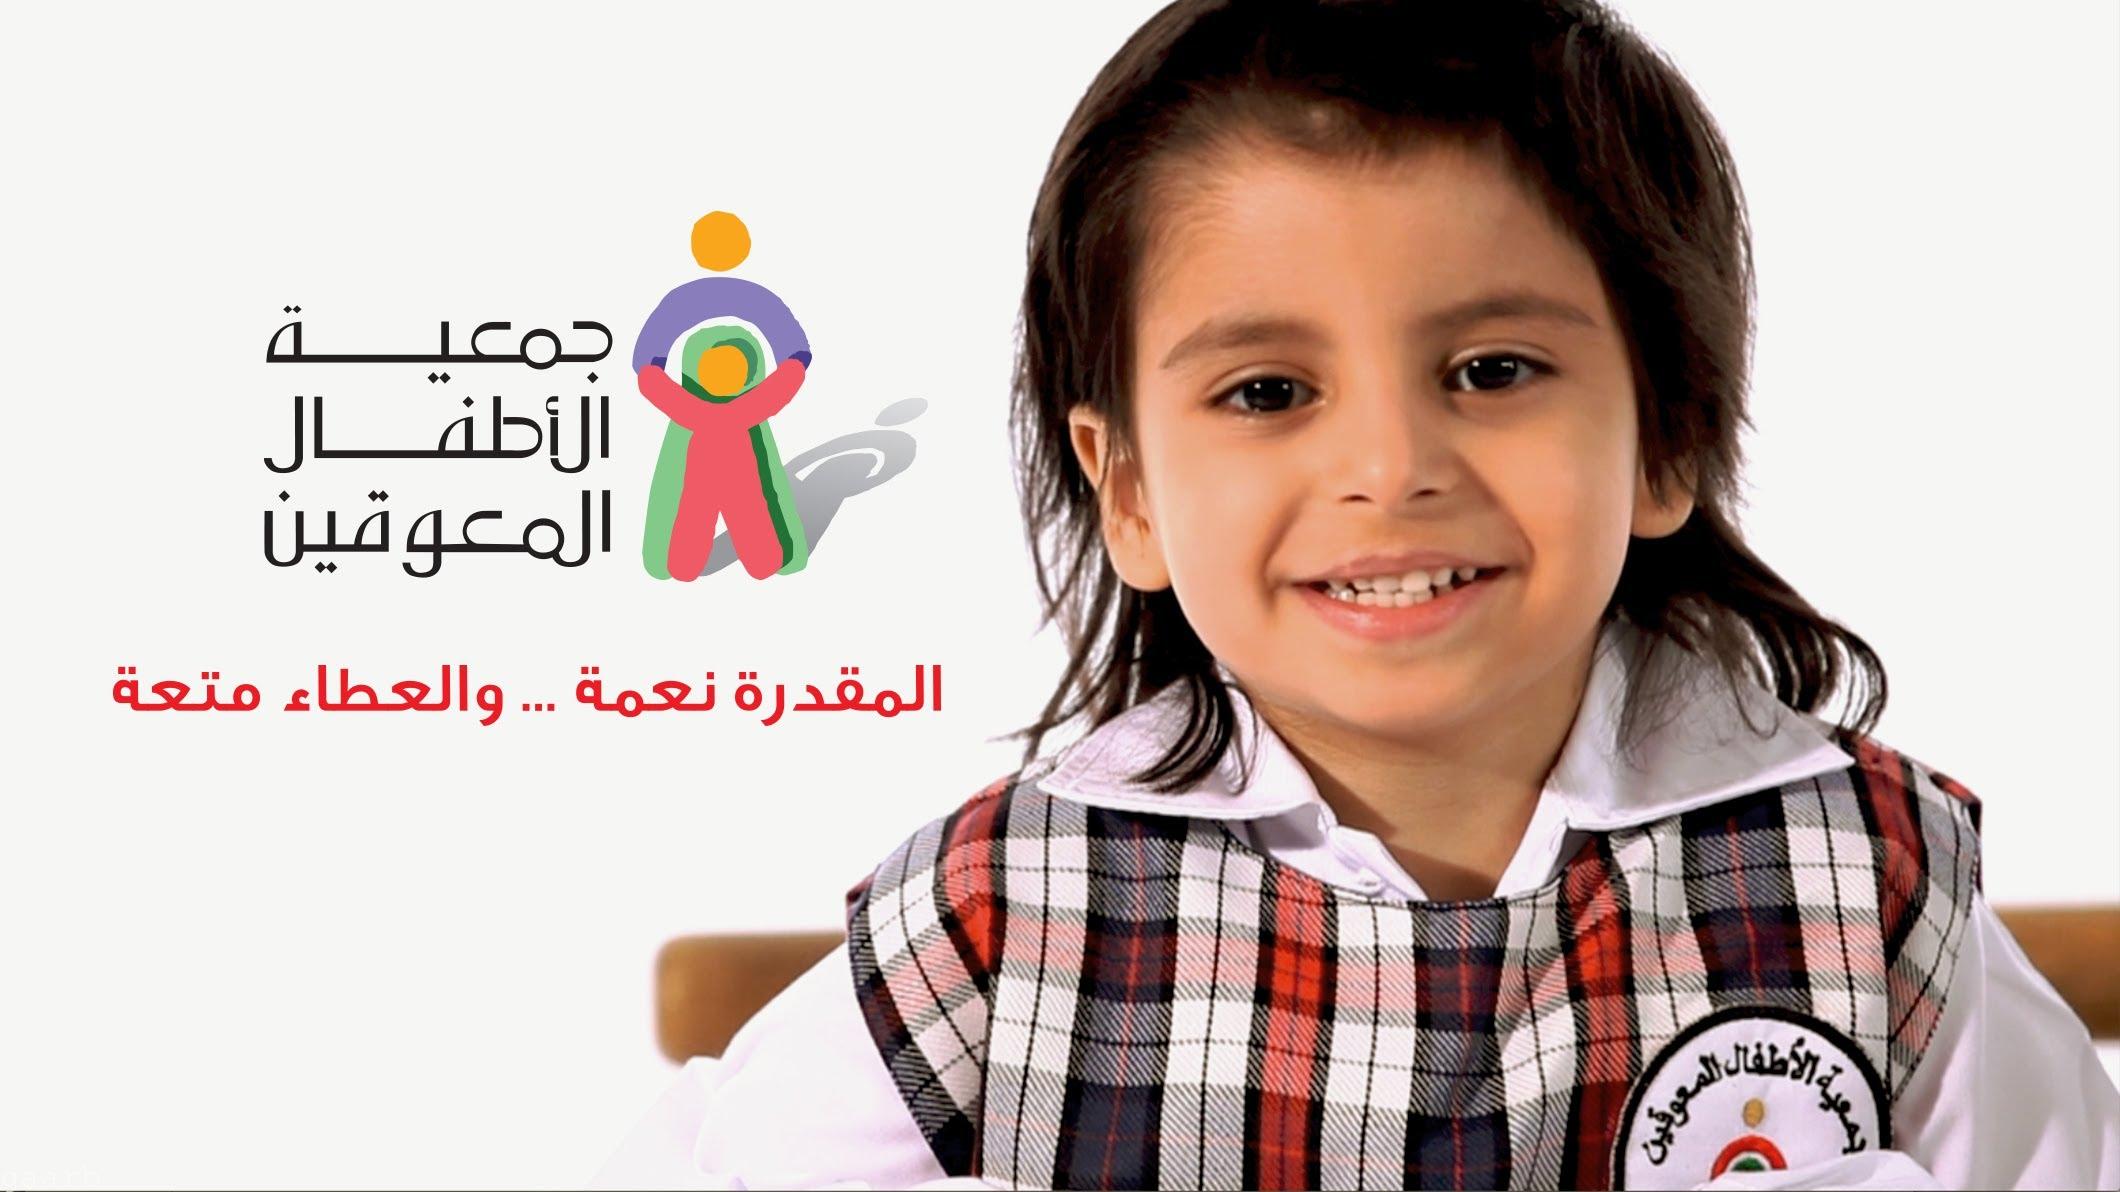 جمعية الأيدي الحرفية بمكة المكرمة توقع اتفاقية مع جمعية الأطفال المعوقين